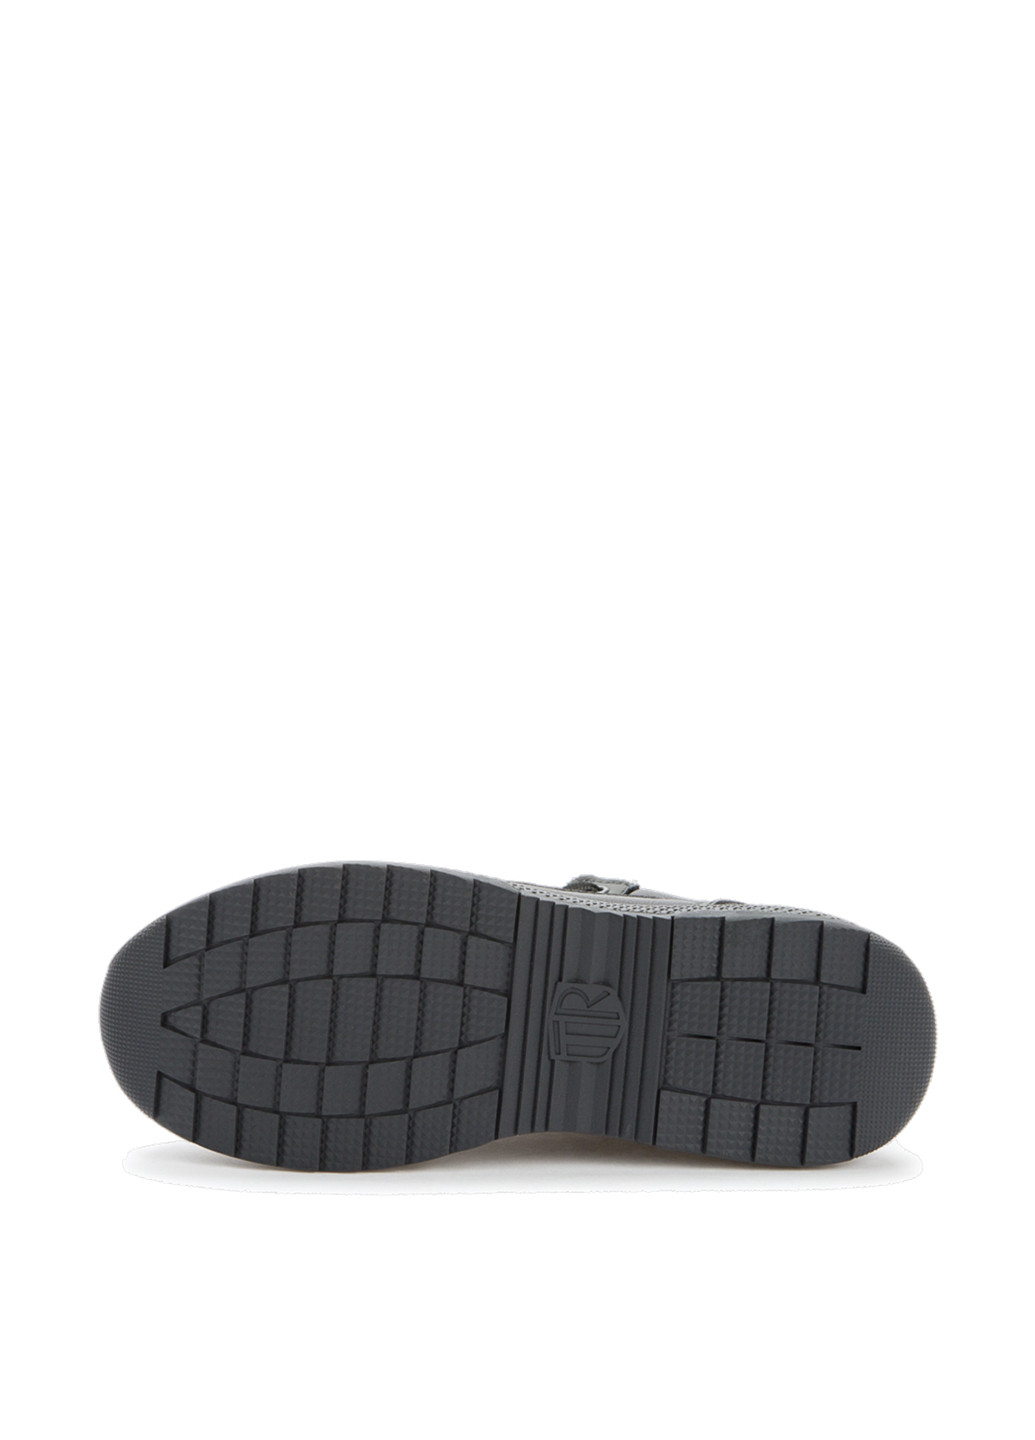 Черные зимние ботинки Tesoro